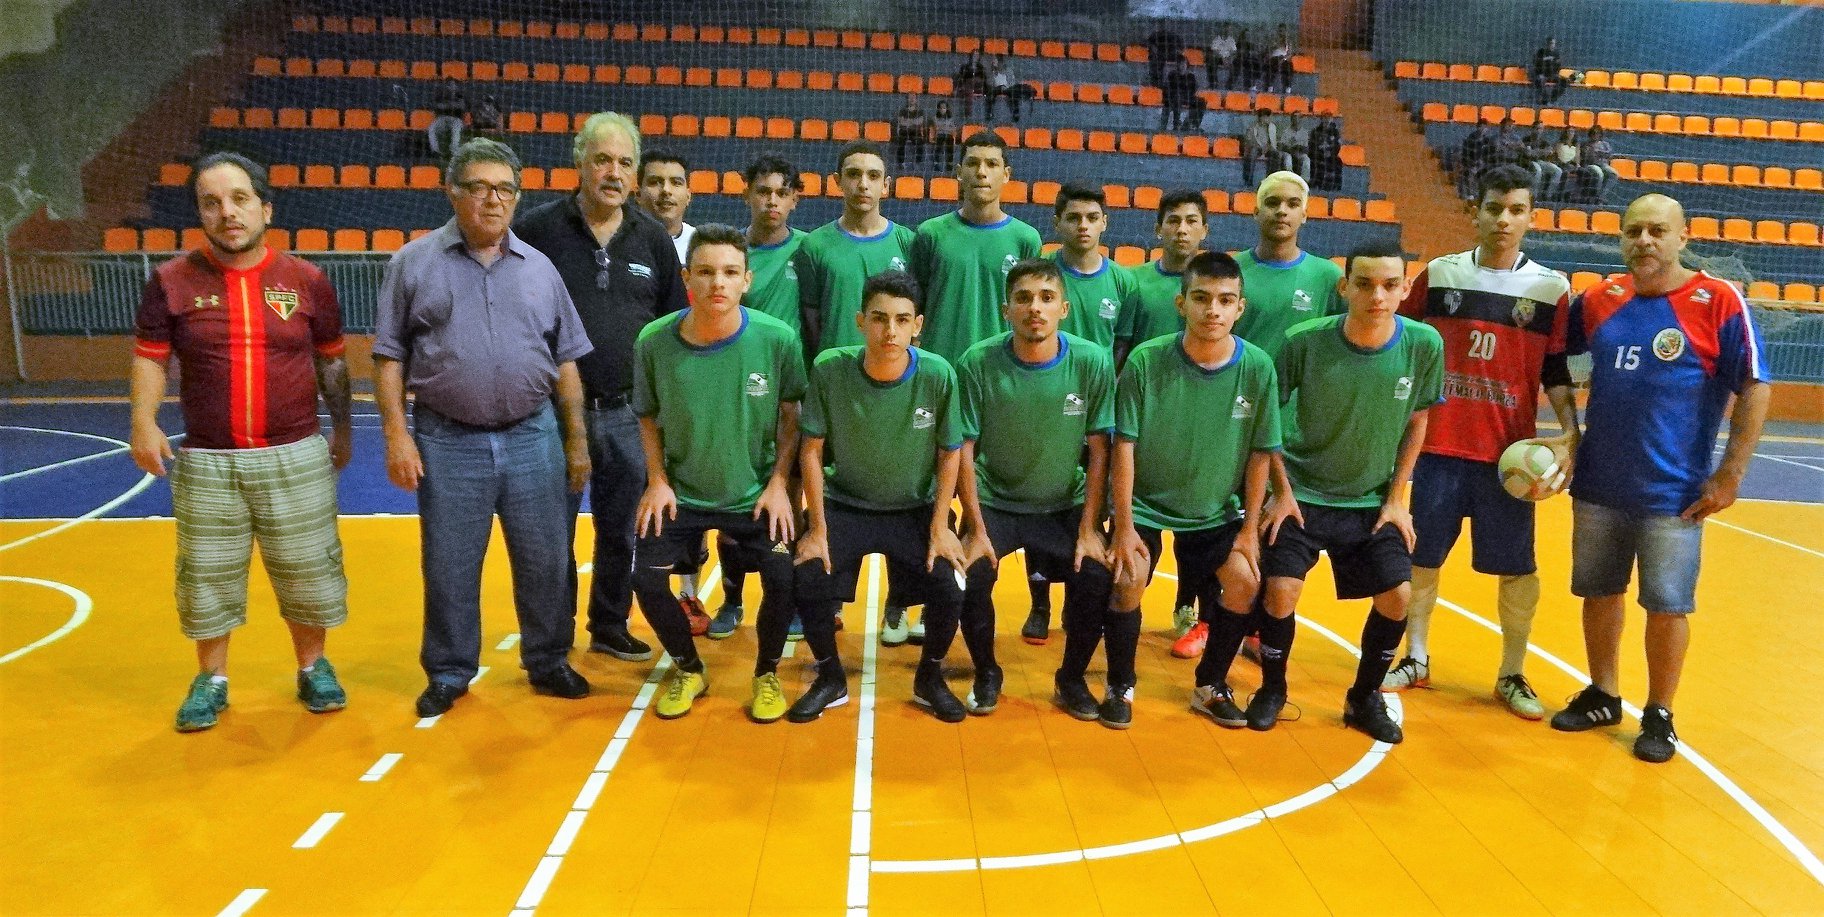 Coordenador de seleções e atleta de Telêmaco Borba são campeões no Mundial  de Futsal AMF - Prefeitura de Telêmaco Borba